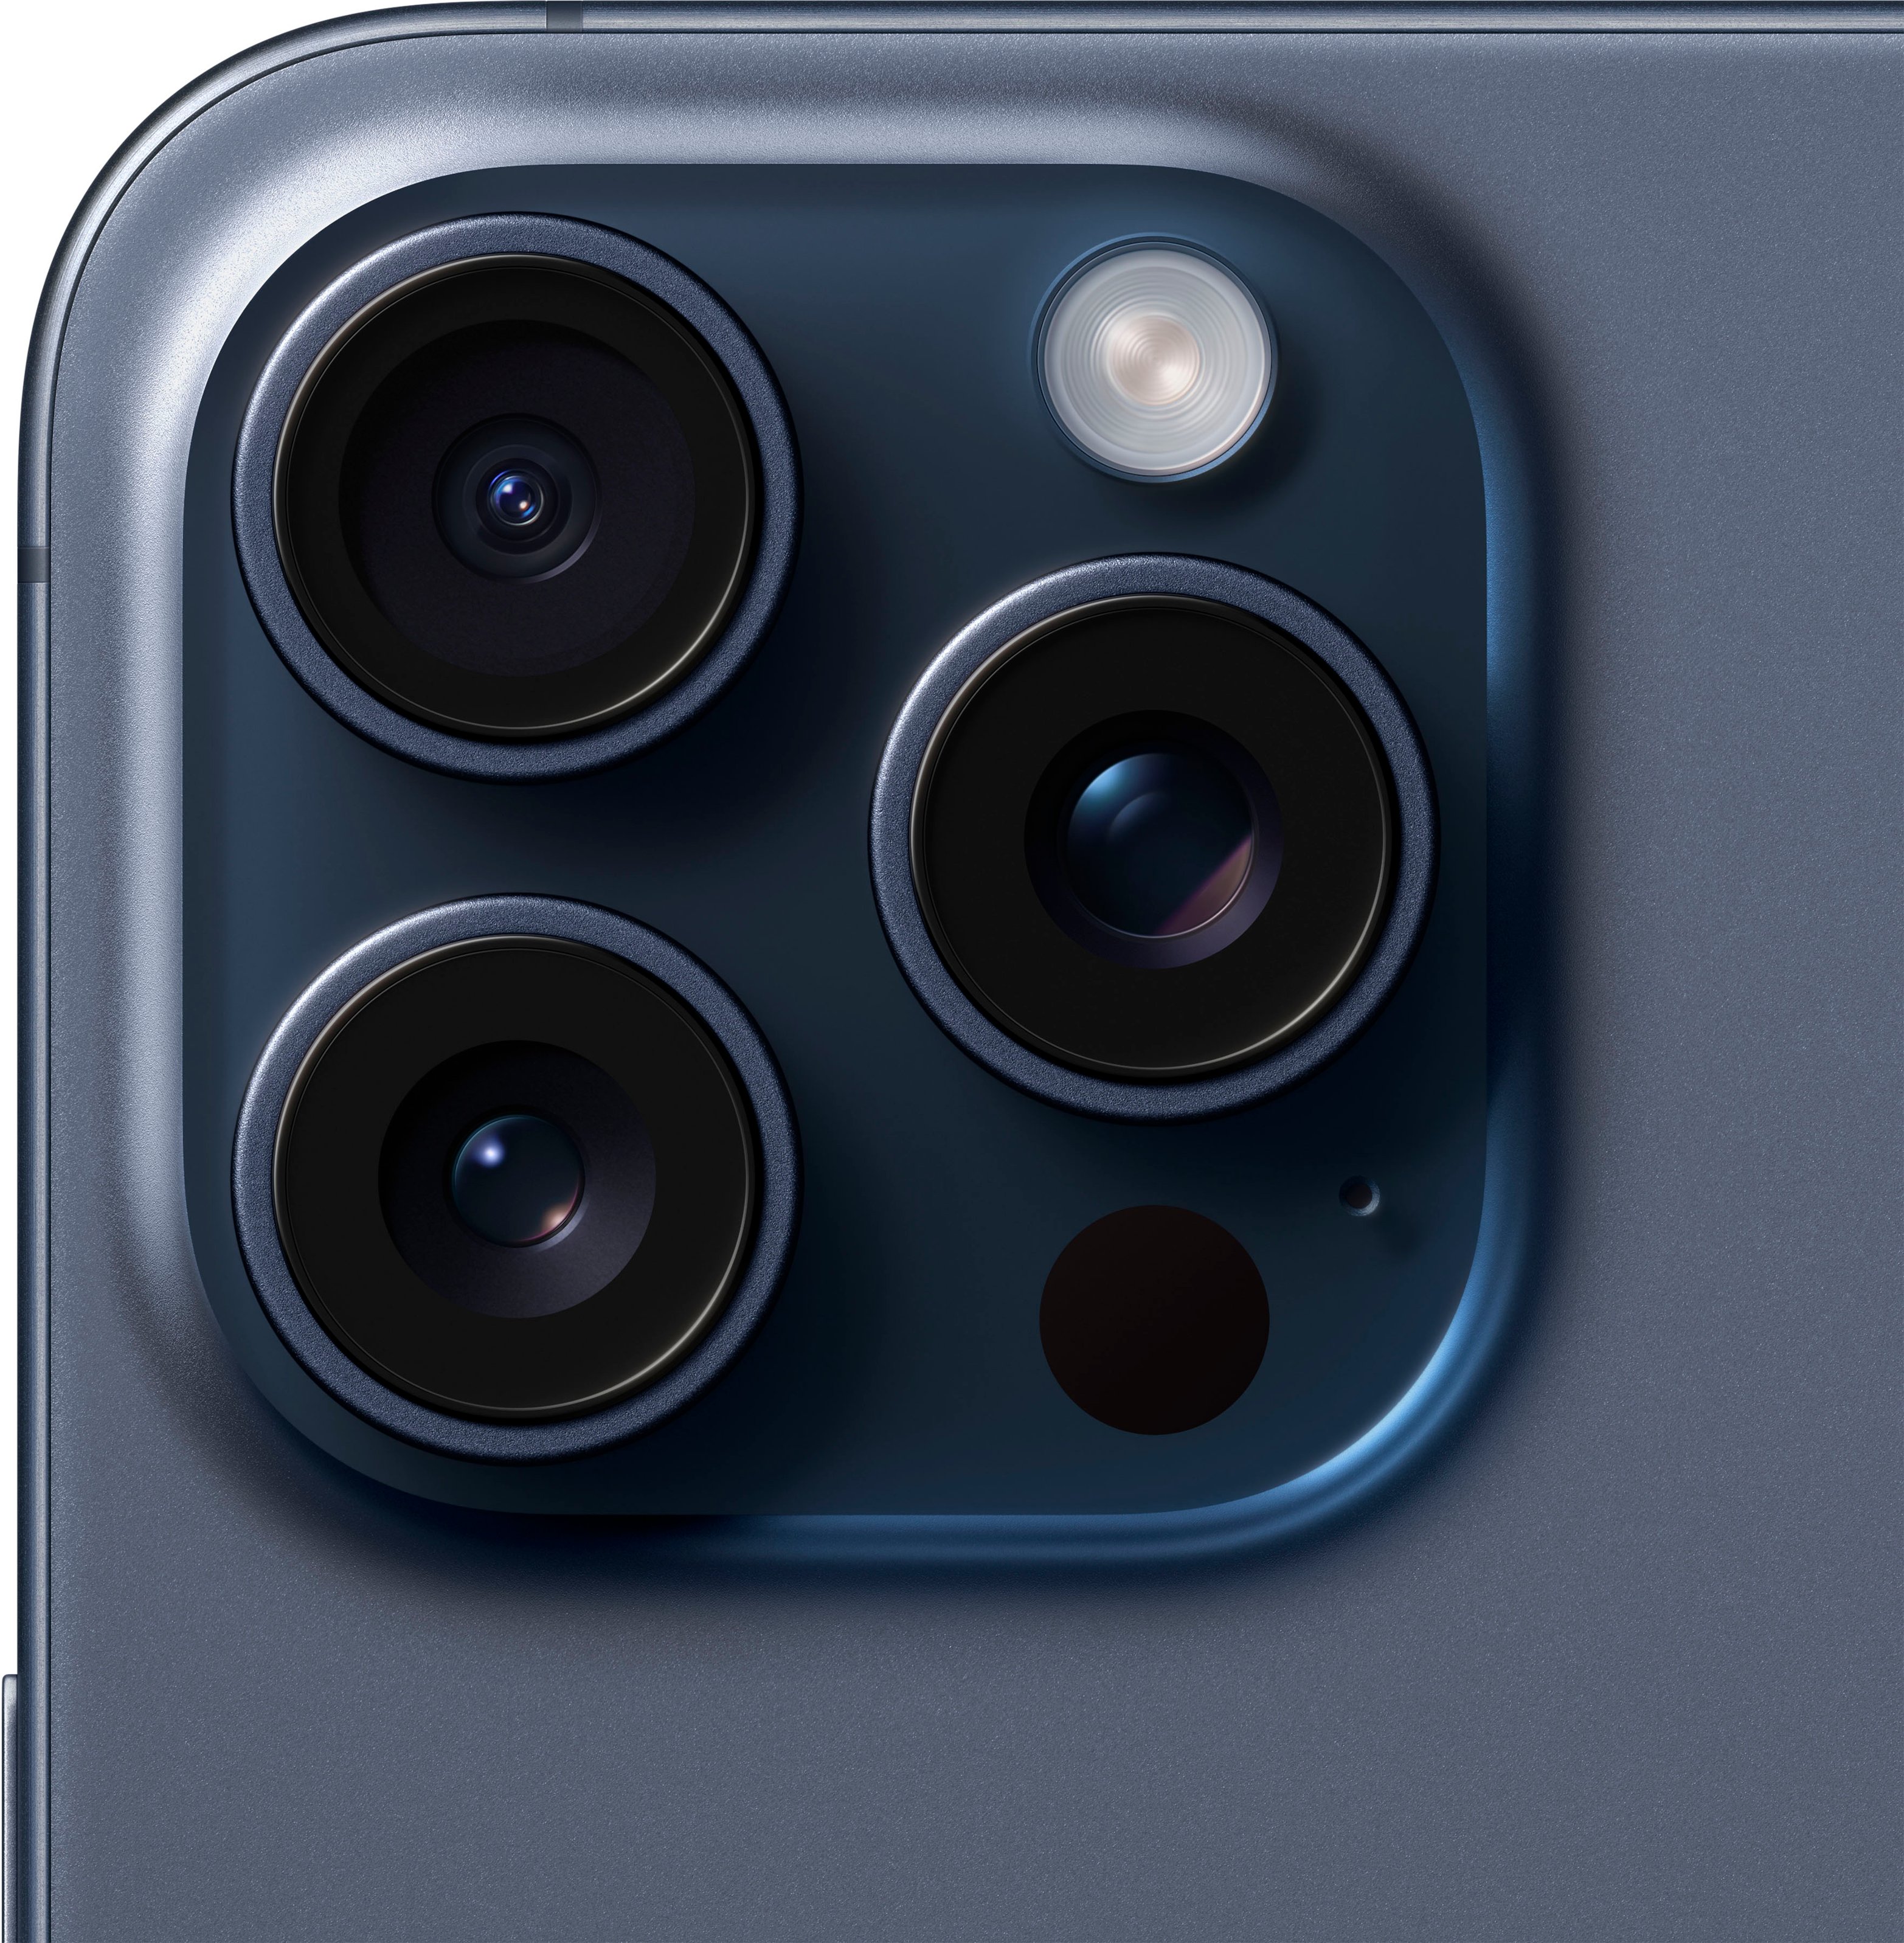 Apple iPhone 15 Pro Max 512GB Blue Titanium Verizon Good Condition  400065254972